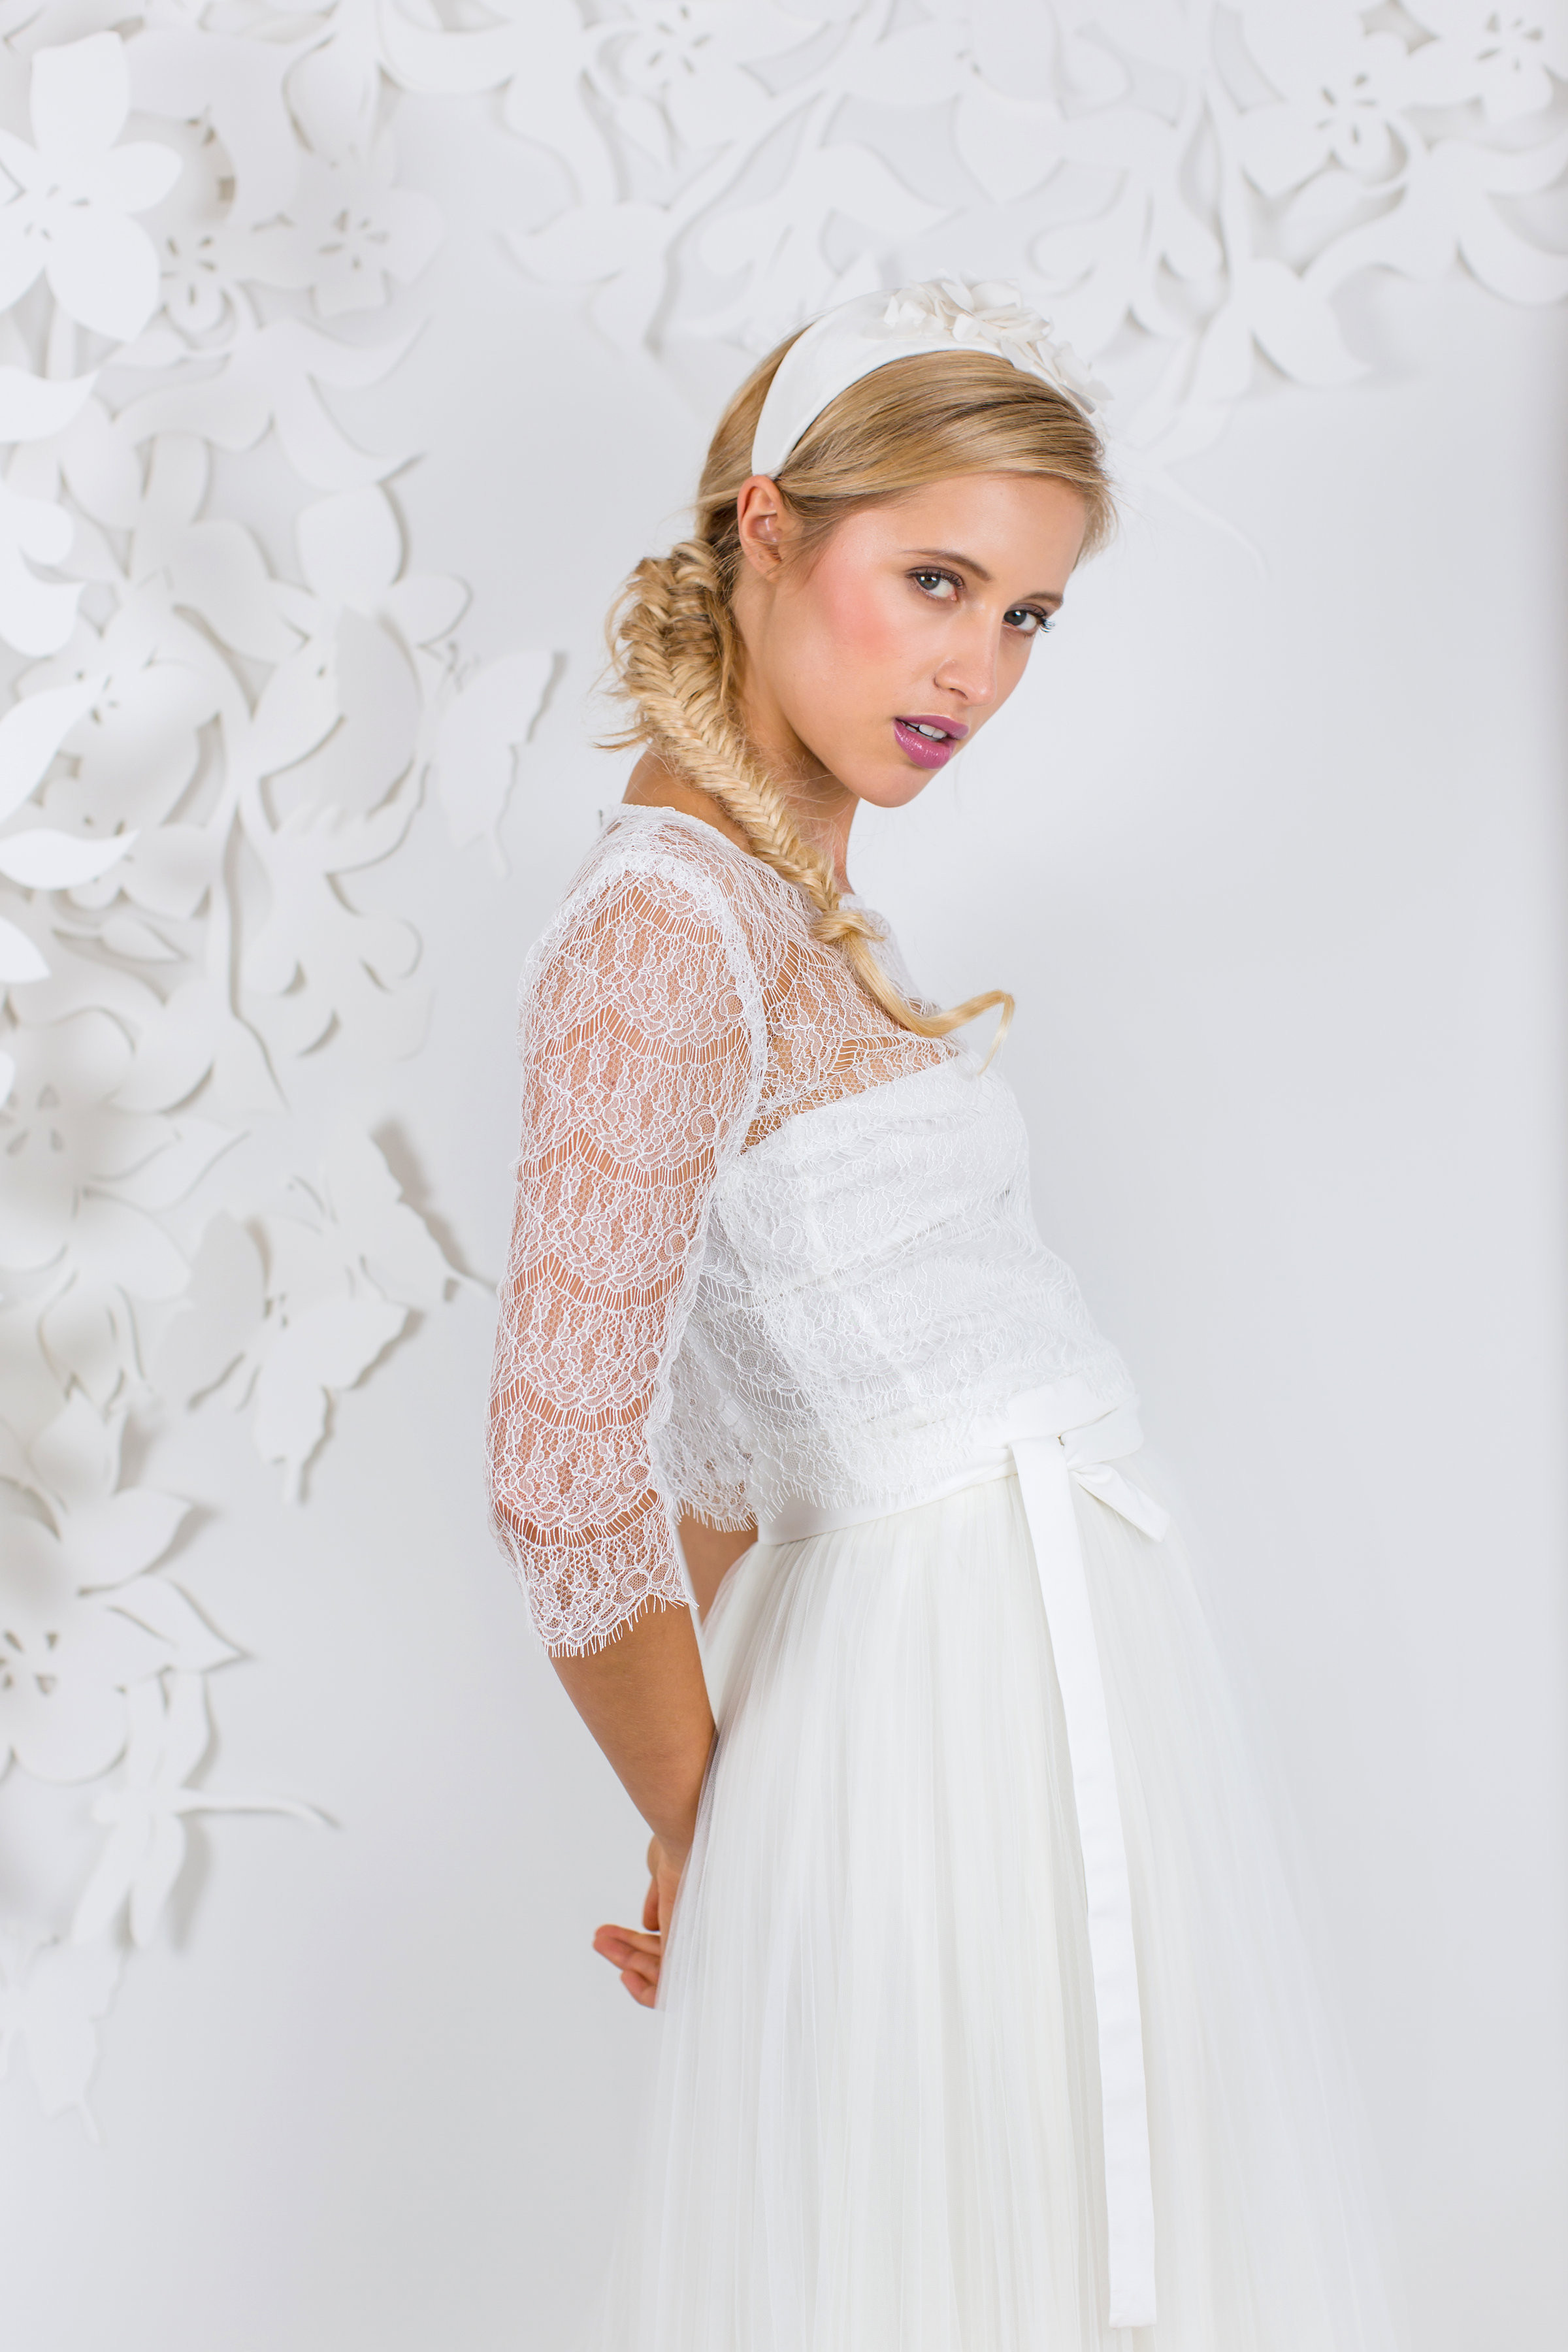 Brautkleid Für Standesamt
 Brautkleid Standesamt Die schönsten Kleider für